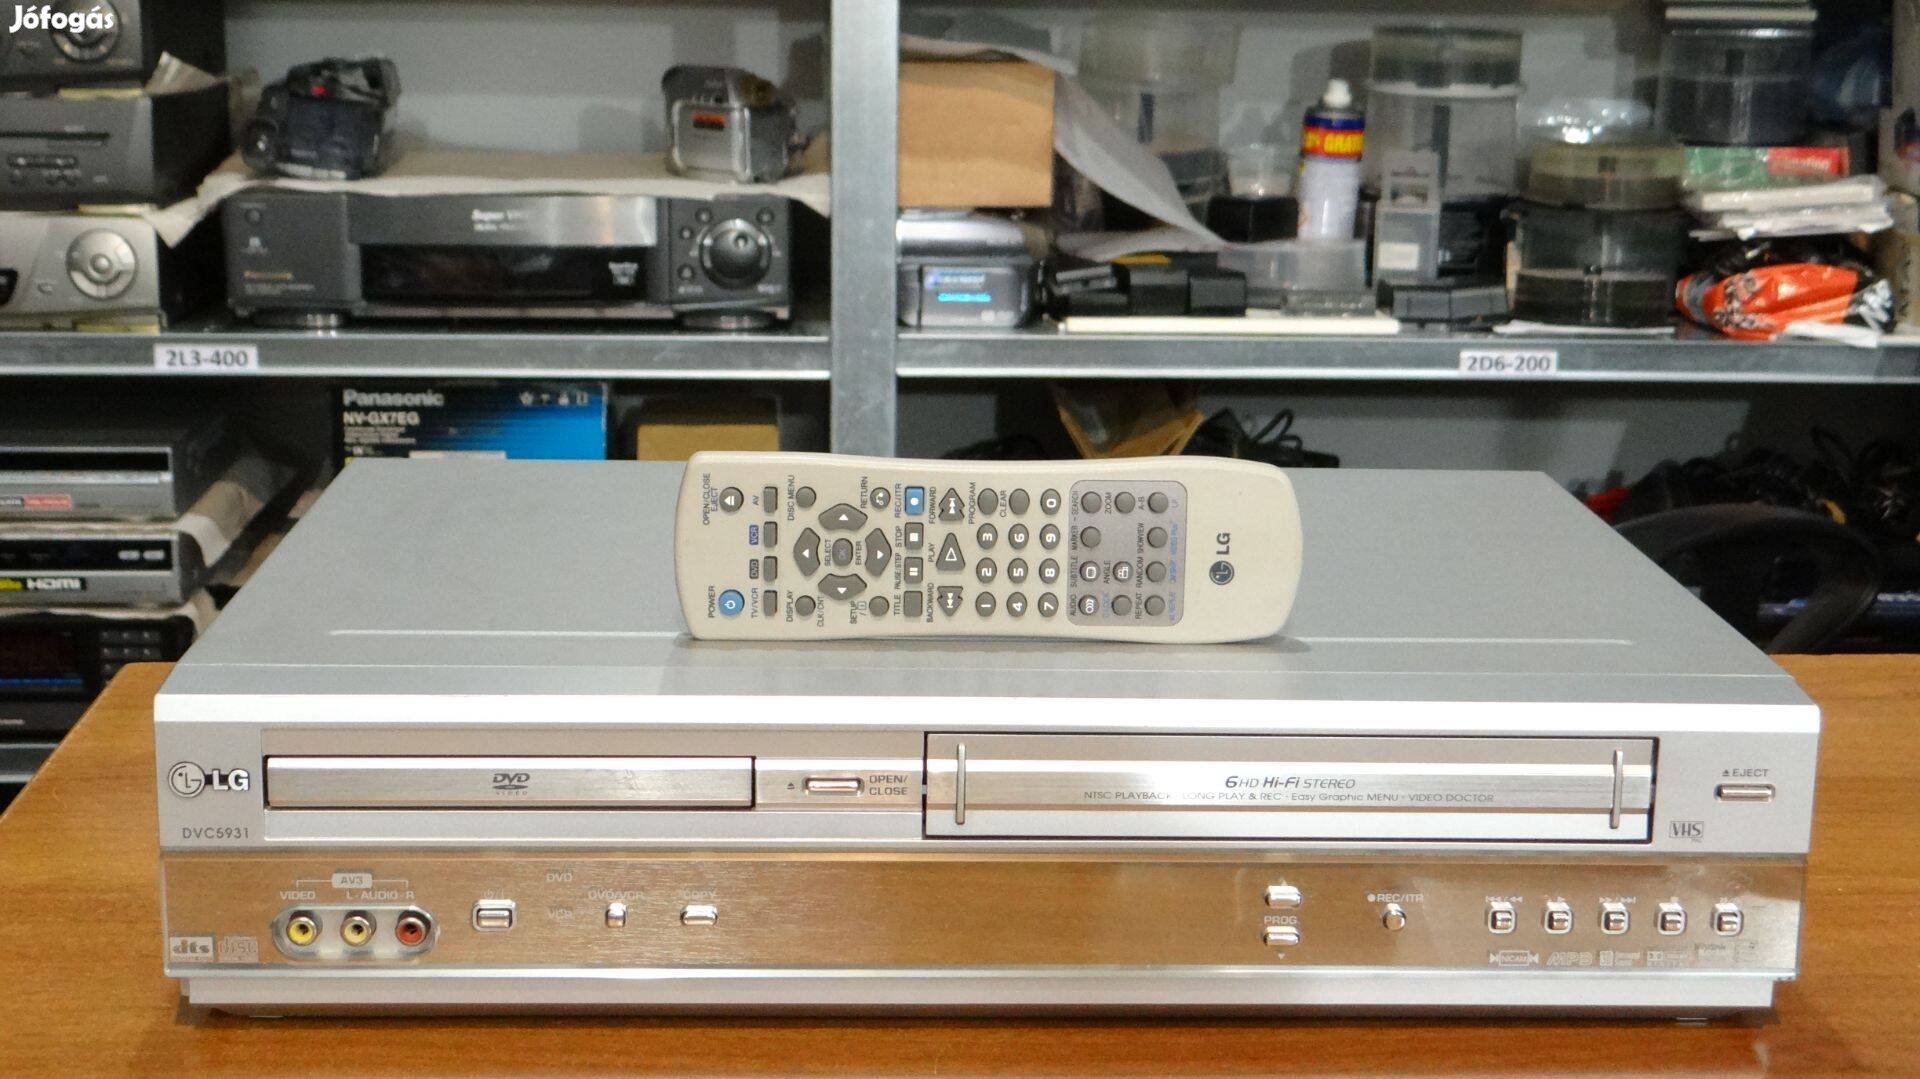 LG DVC5931 VHS/DVD Player